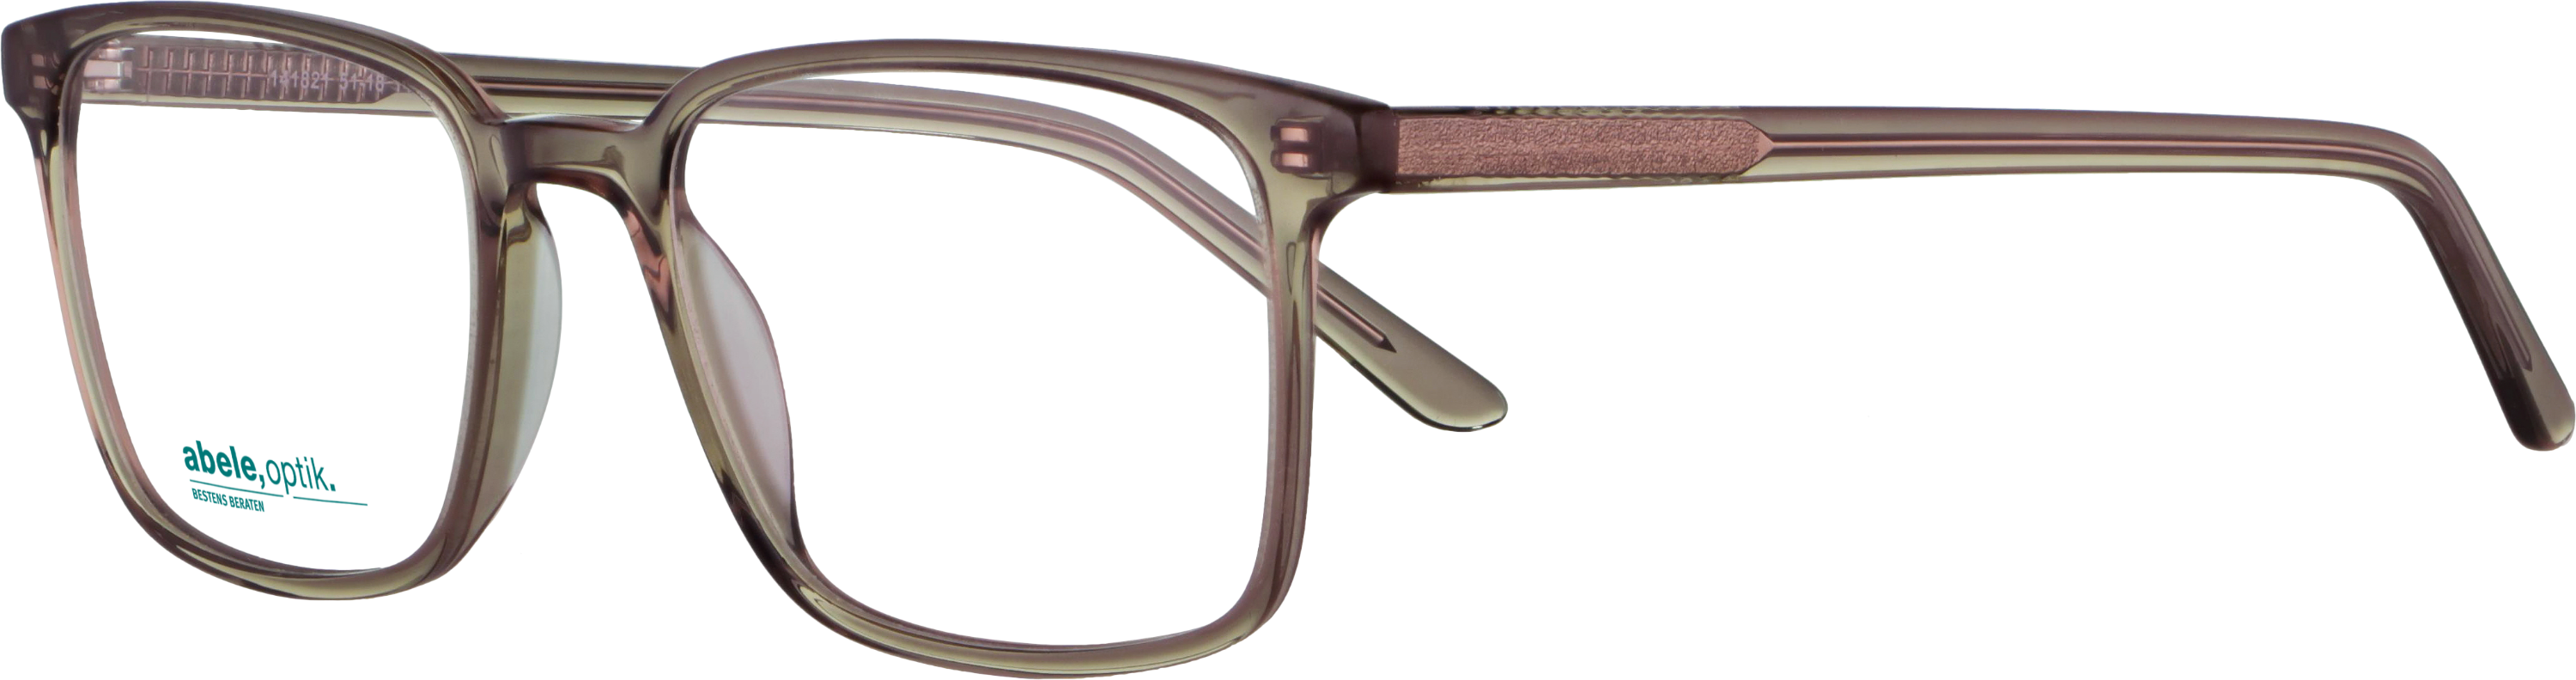 Das Bild zeigt die Korrektionsbrille 141821 von der Marke Abele Optik in braun transparent.